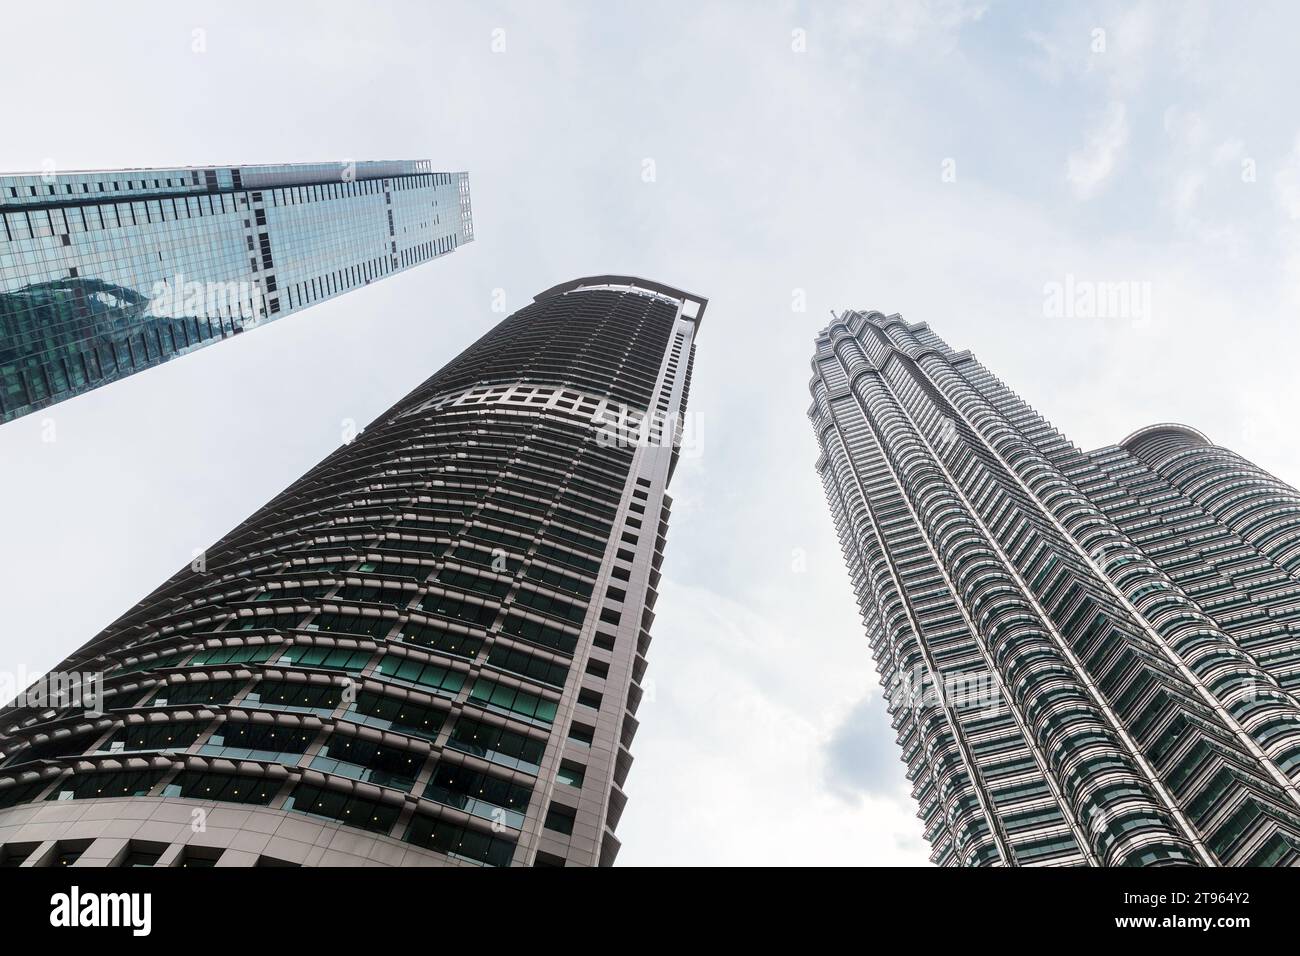 Kuala Lumpur, Malaisie - 25 novembre 2019 : gratte-ciel sous ciel nuageux, vue de bas en haut de la ville de Kuala Lumpur Banque D'Images